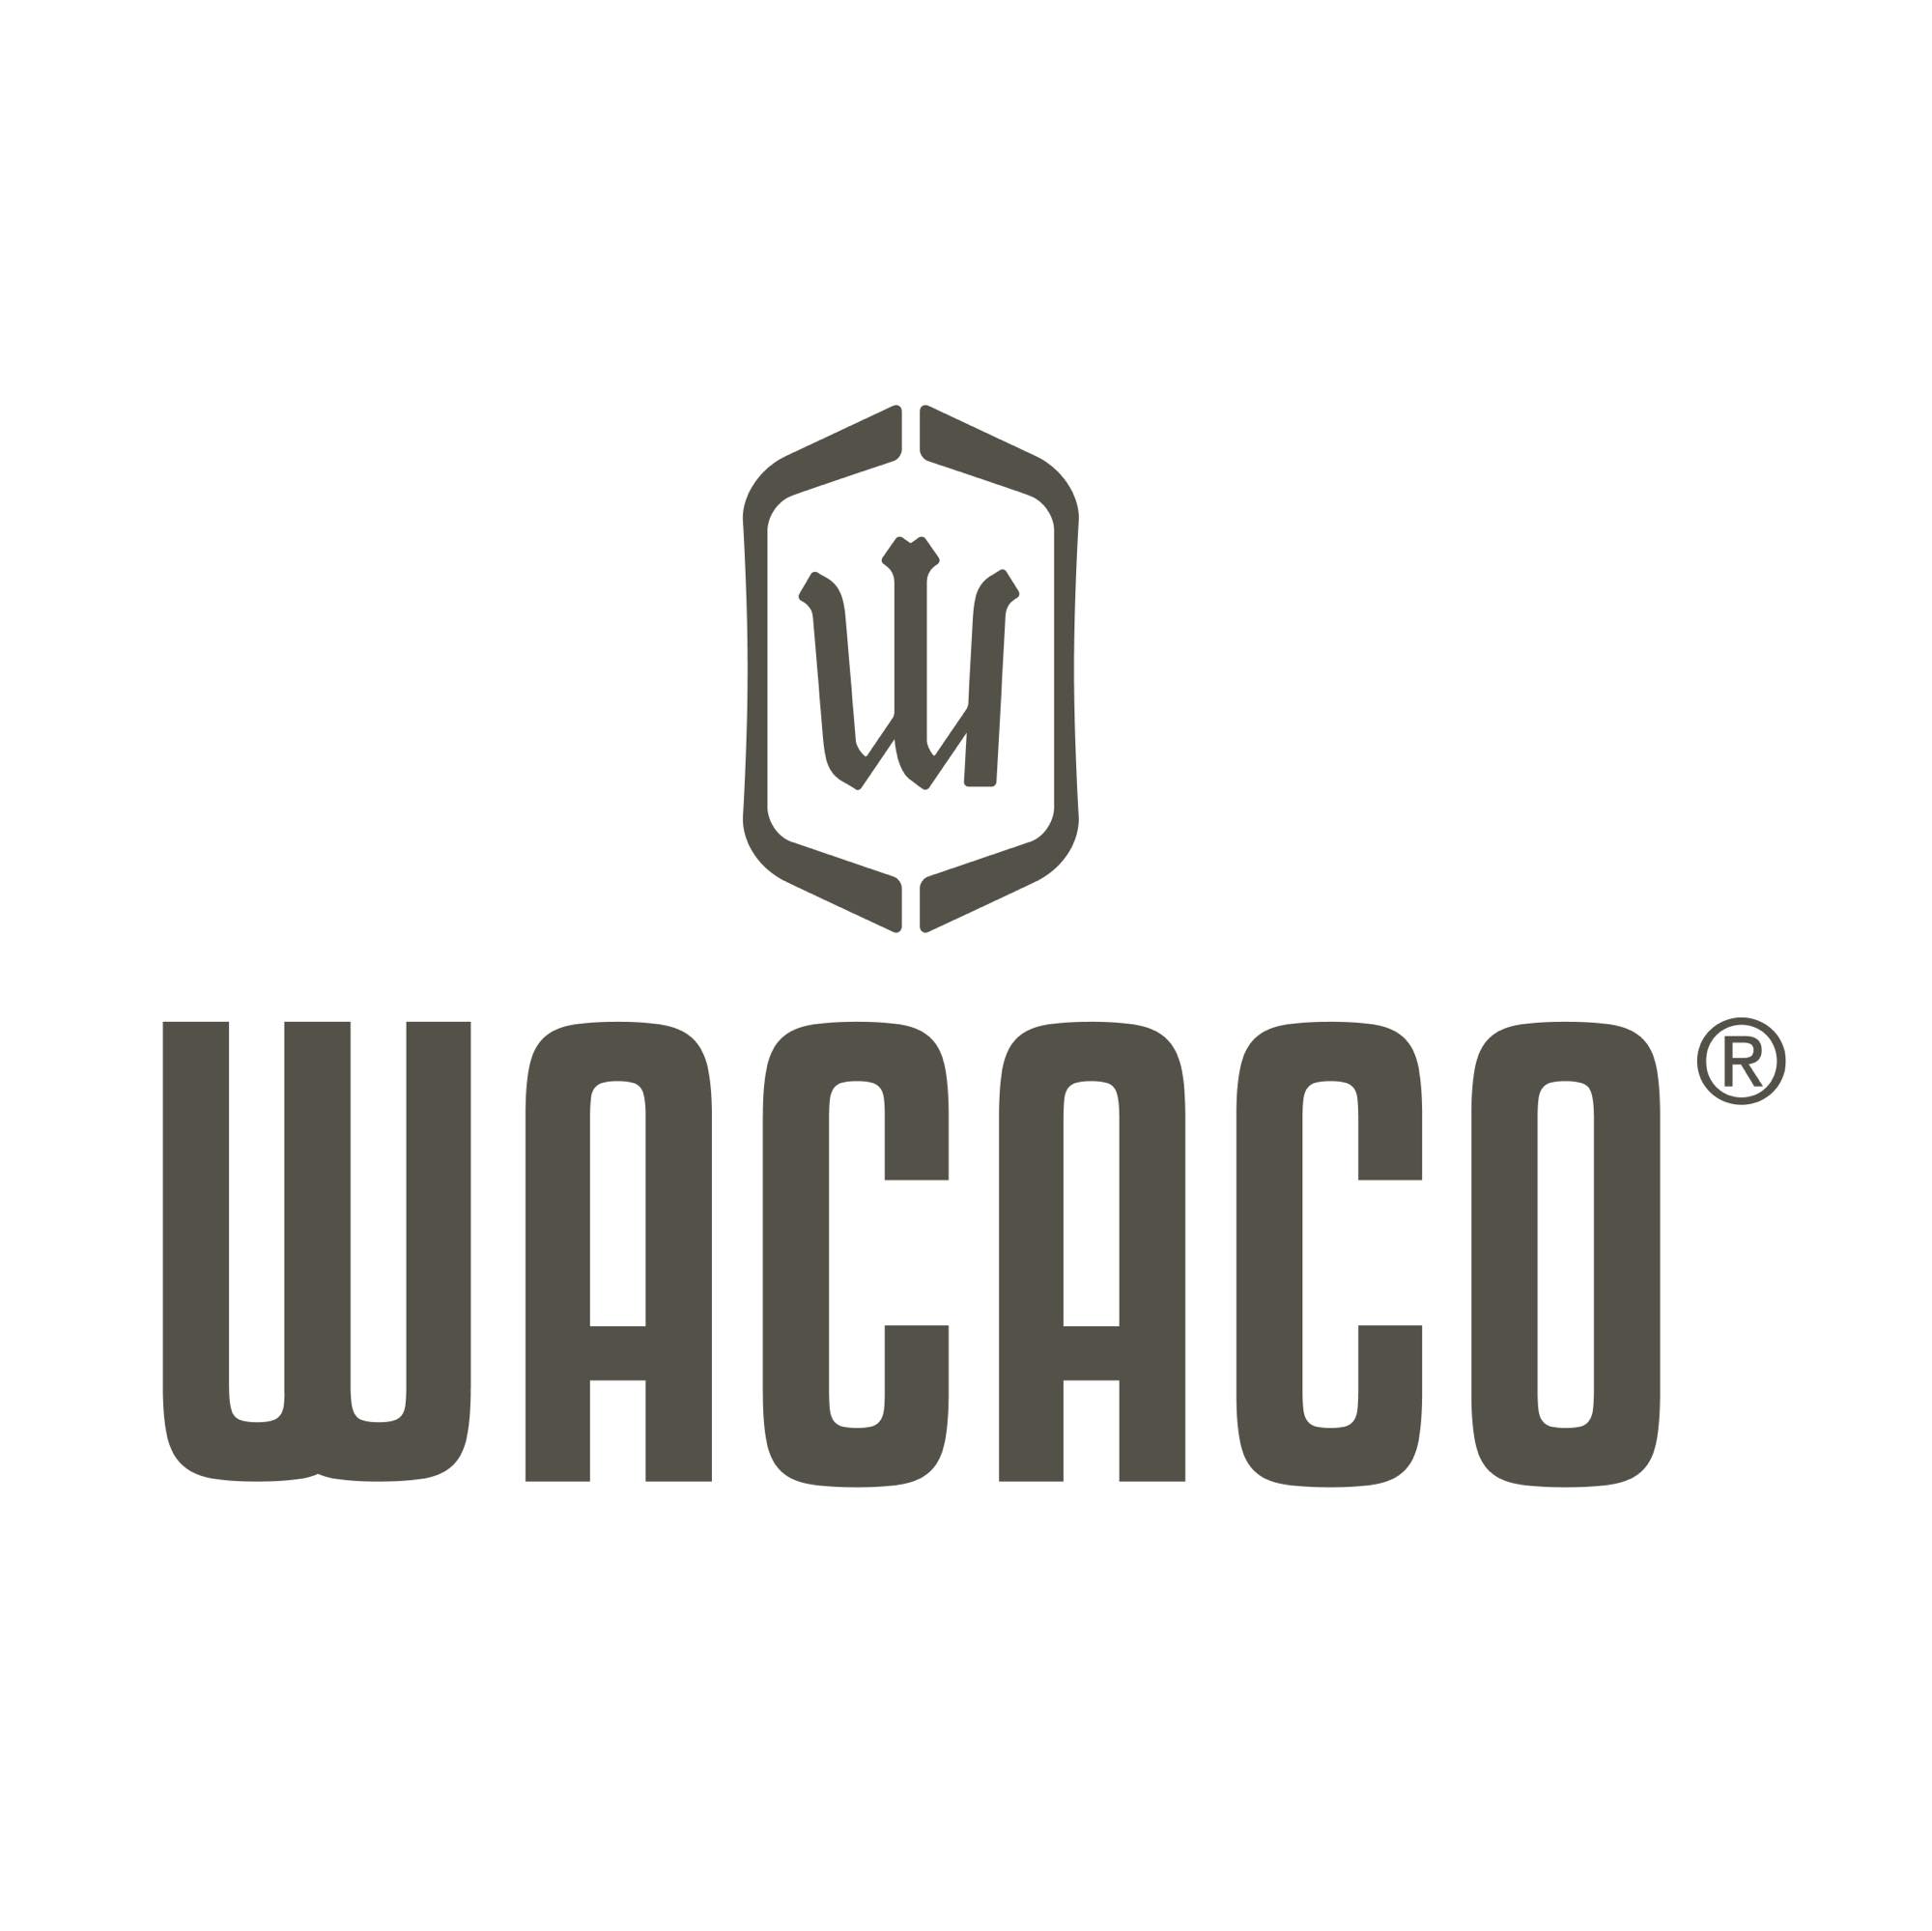 Wacaco Company Limited